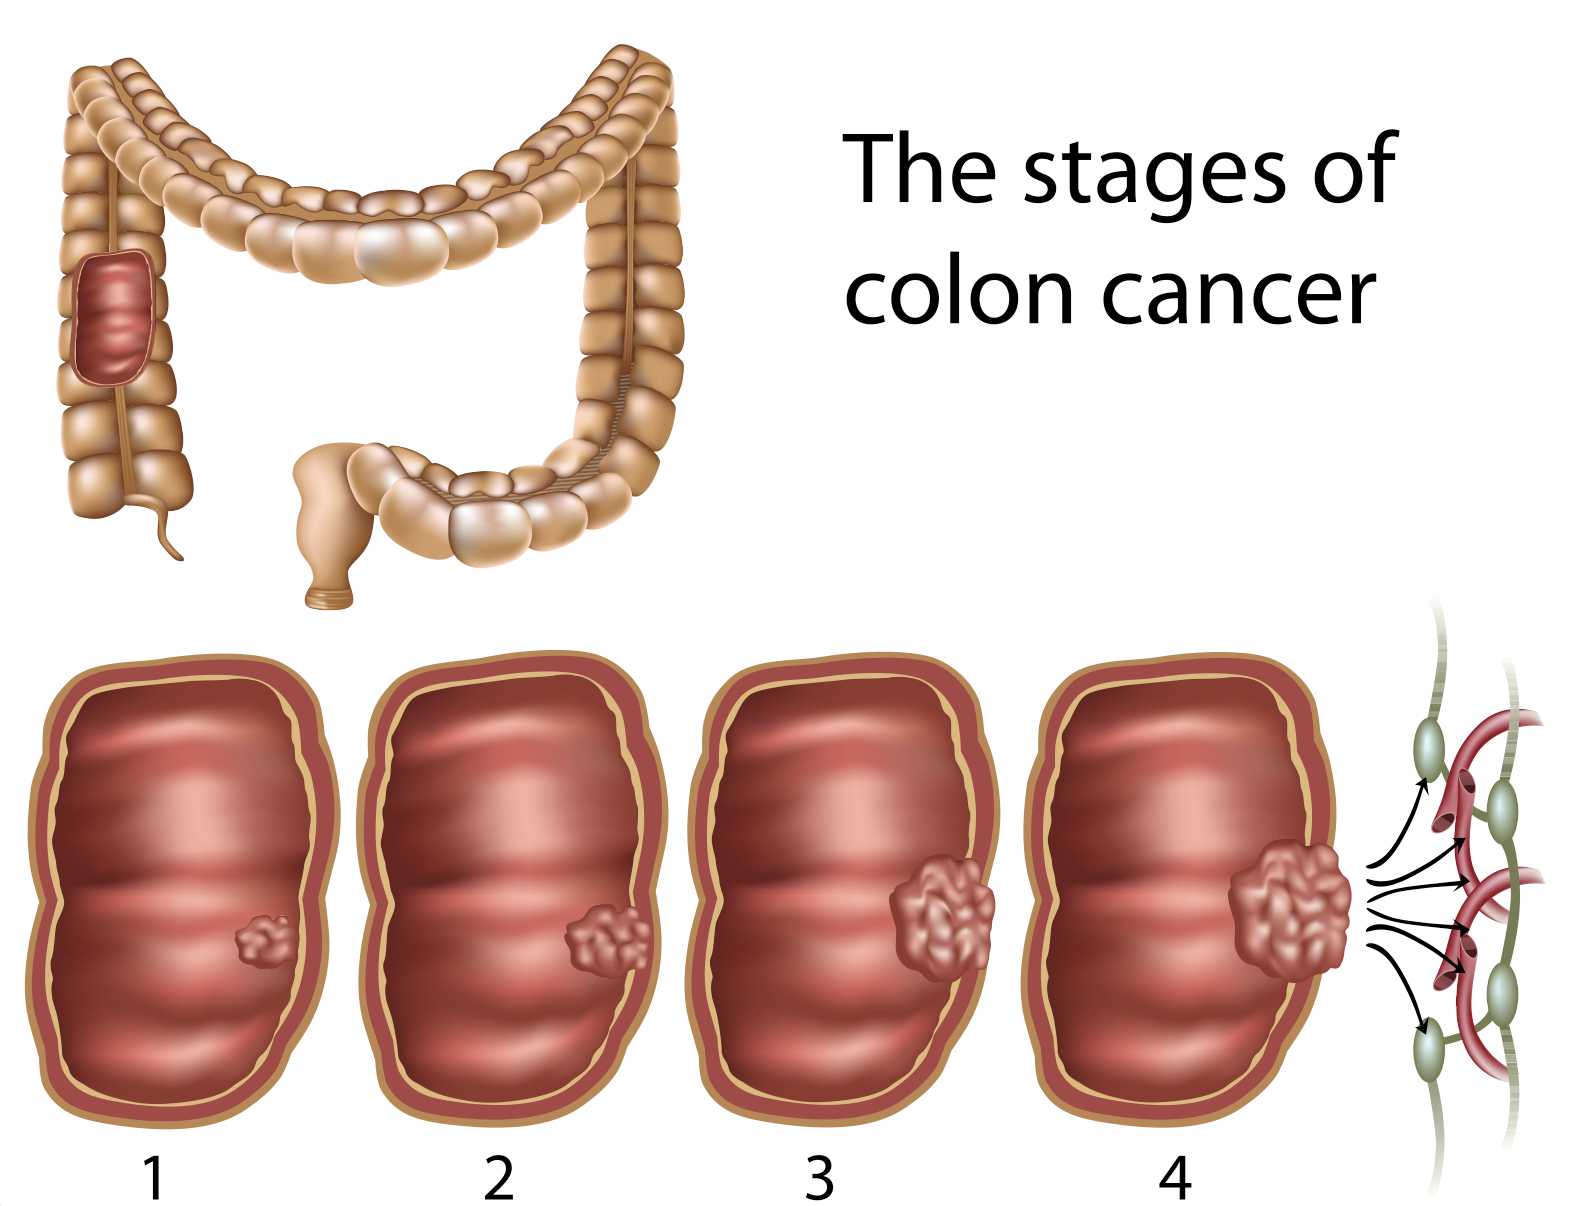 cancer de colon nivel 2